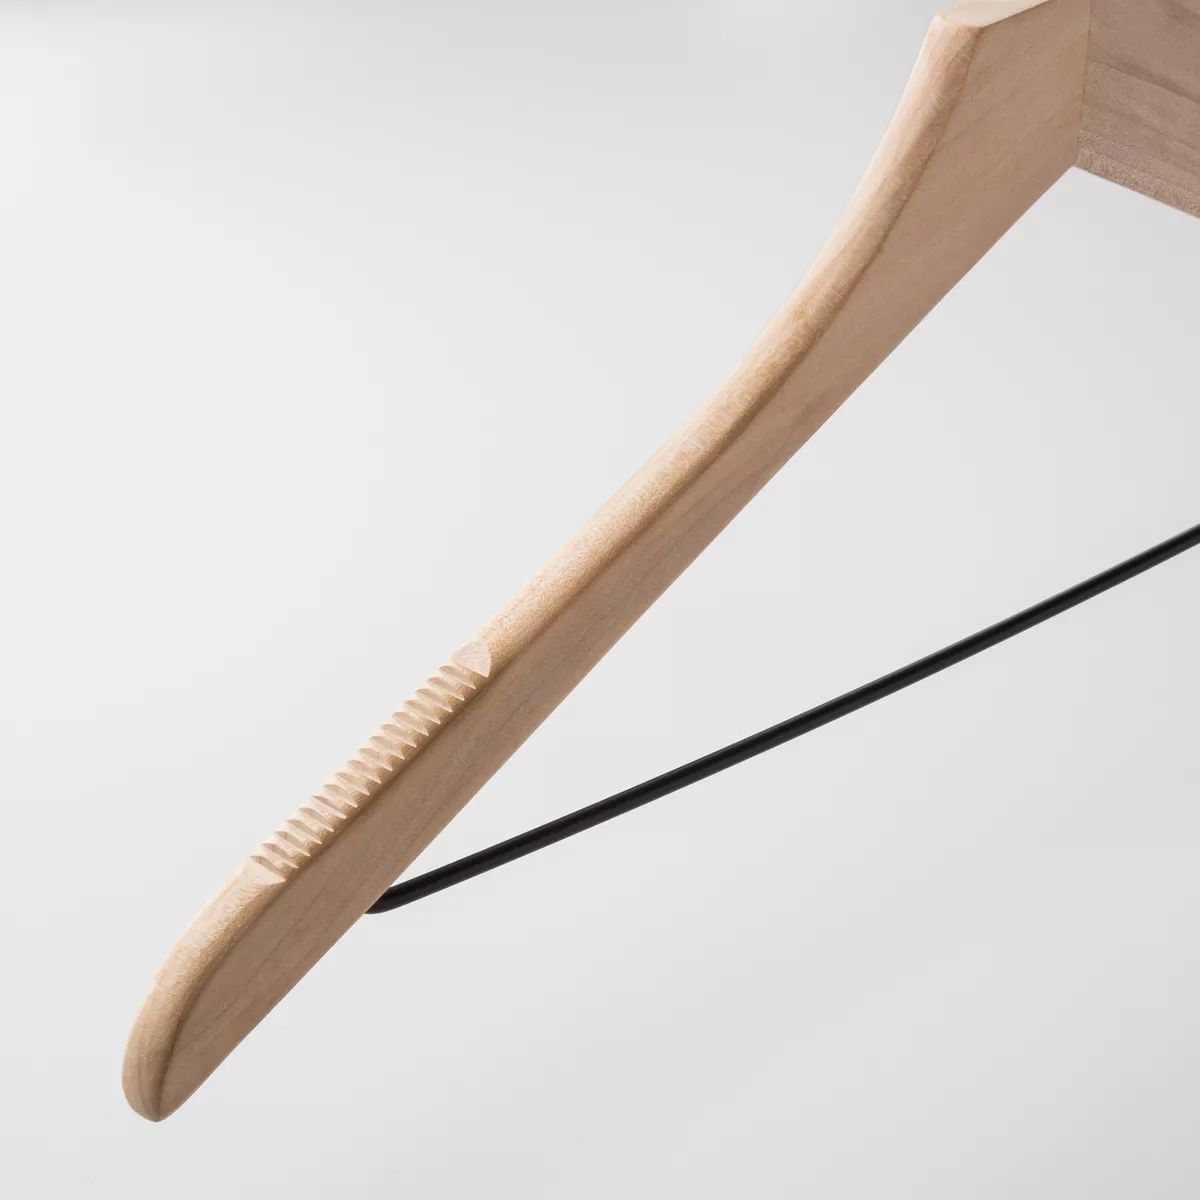 24pk Wood Suit Hangers - Brightroom™ | Target